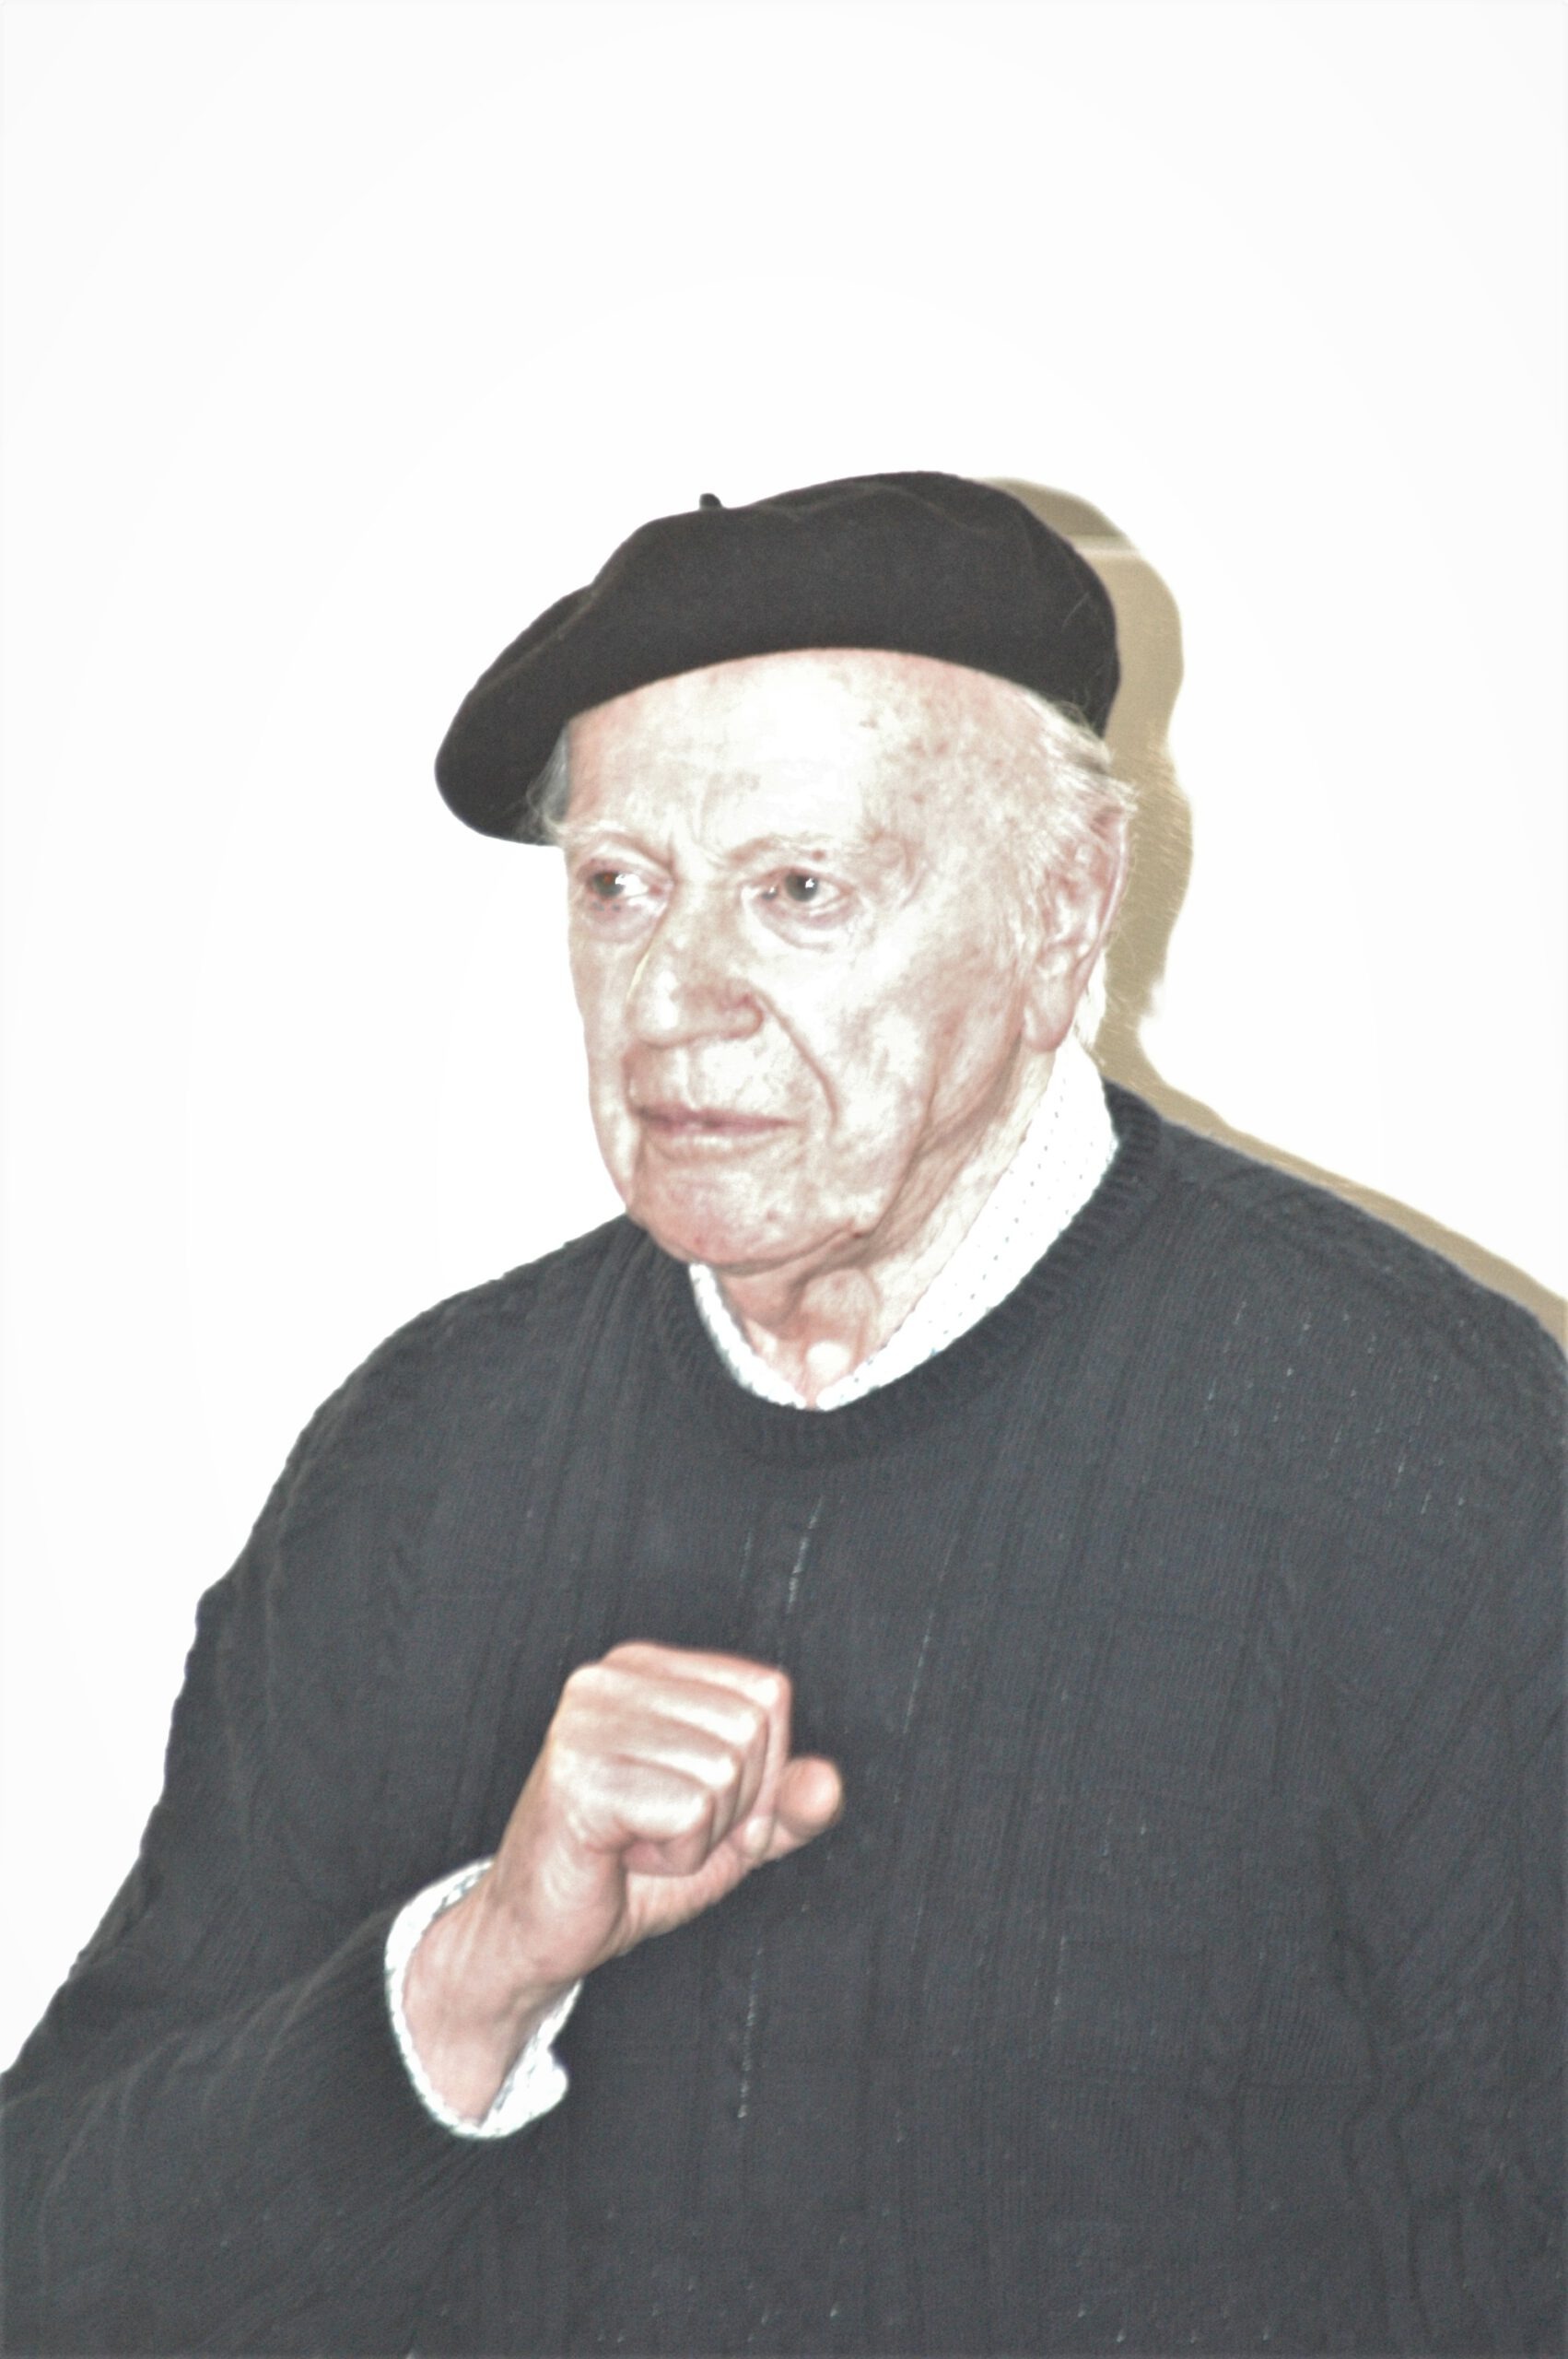 2006 : Portrait d'Egon Altdorf réalisé lors de la célébration du 40e anniversaire de l'inauguration de la synagogue. Photographe : Igor Eisenschtat. Collection de la communauté juive de Wiesbaden